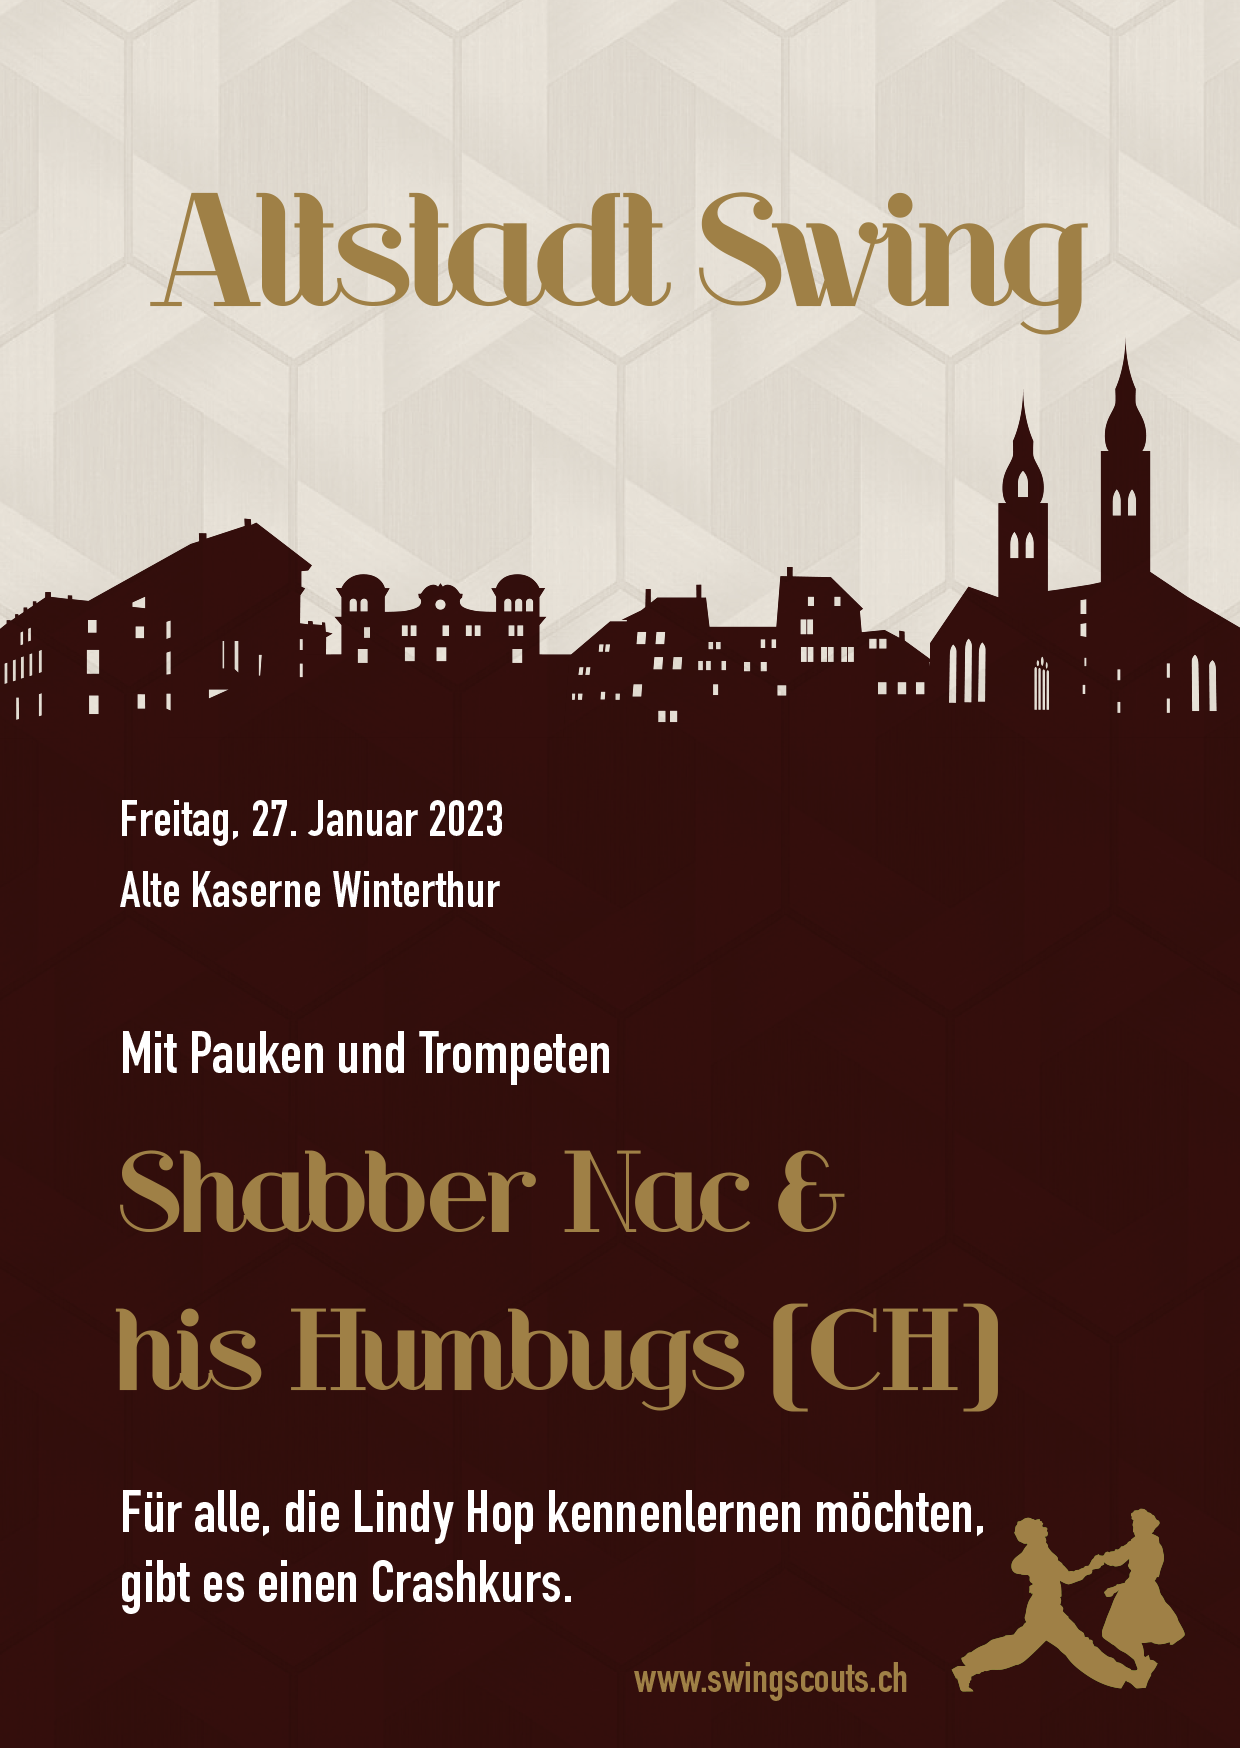 Fr. 27.01.2023 # Altstadtswing mit Shabber Nac & his Humbugs